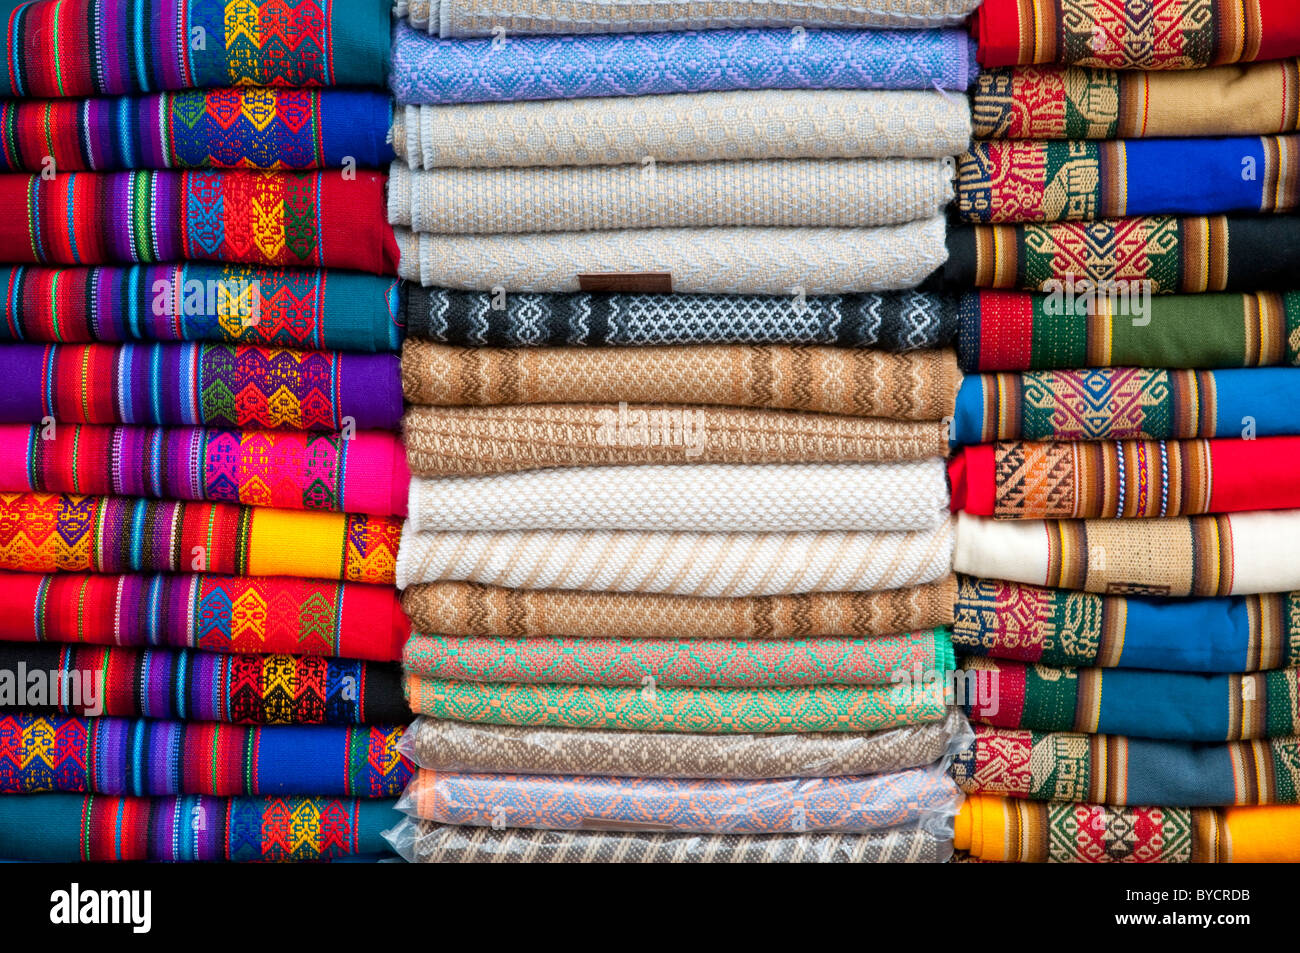 Closeup of Peruvian blankets for sale at a roadside market in rural Peru, South America. Stock Photo